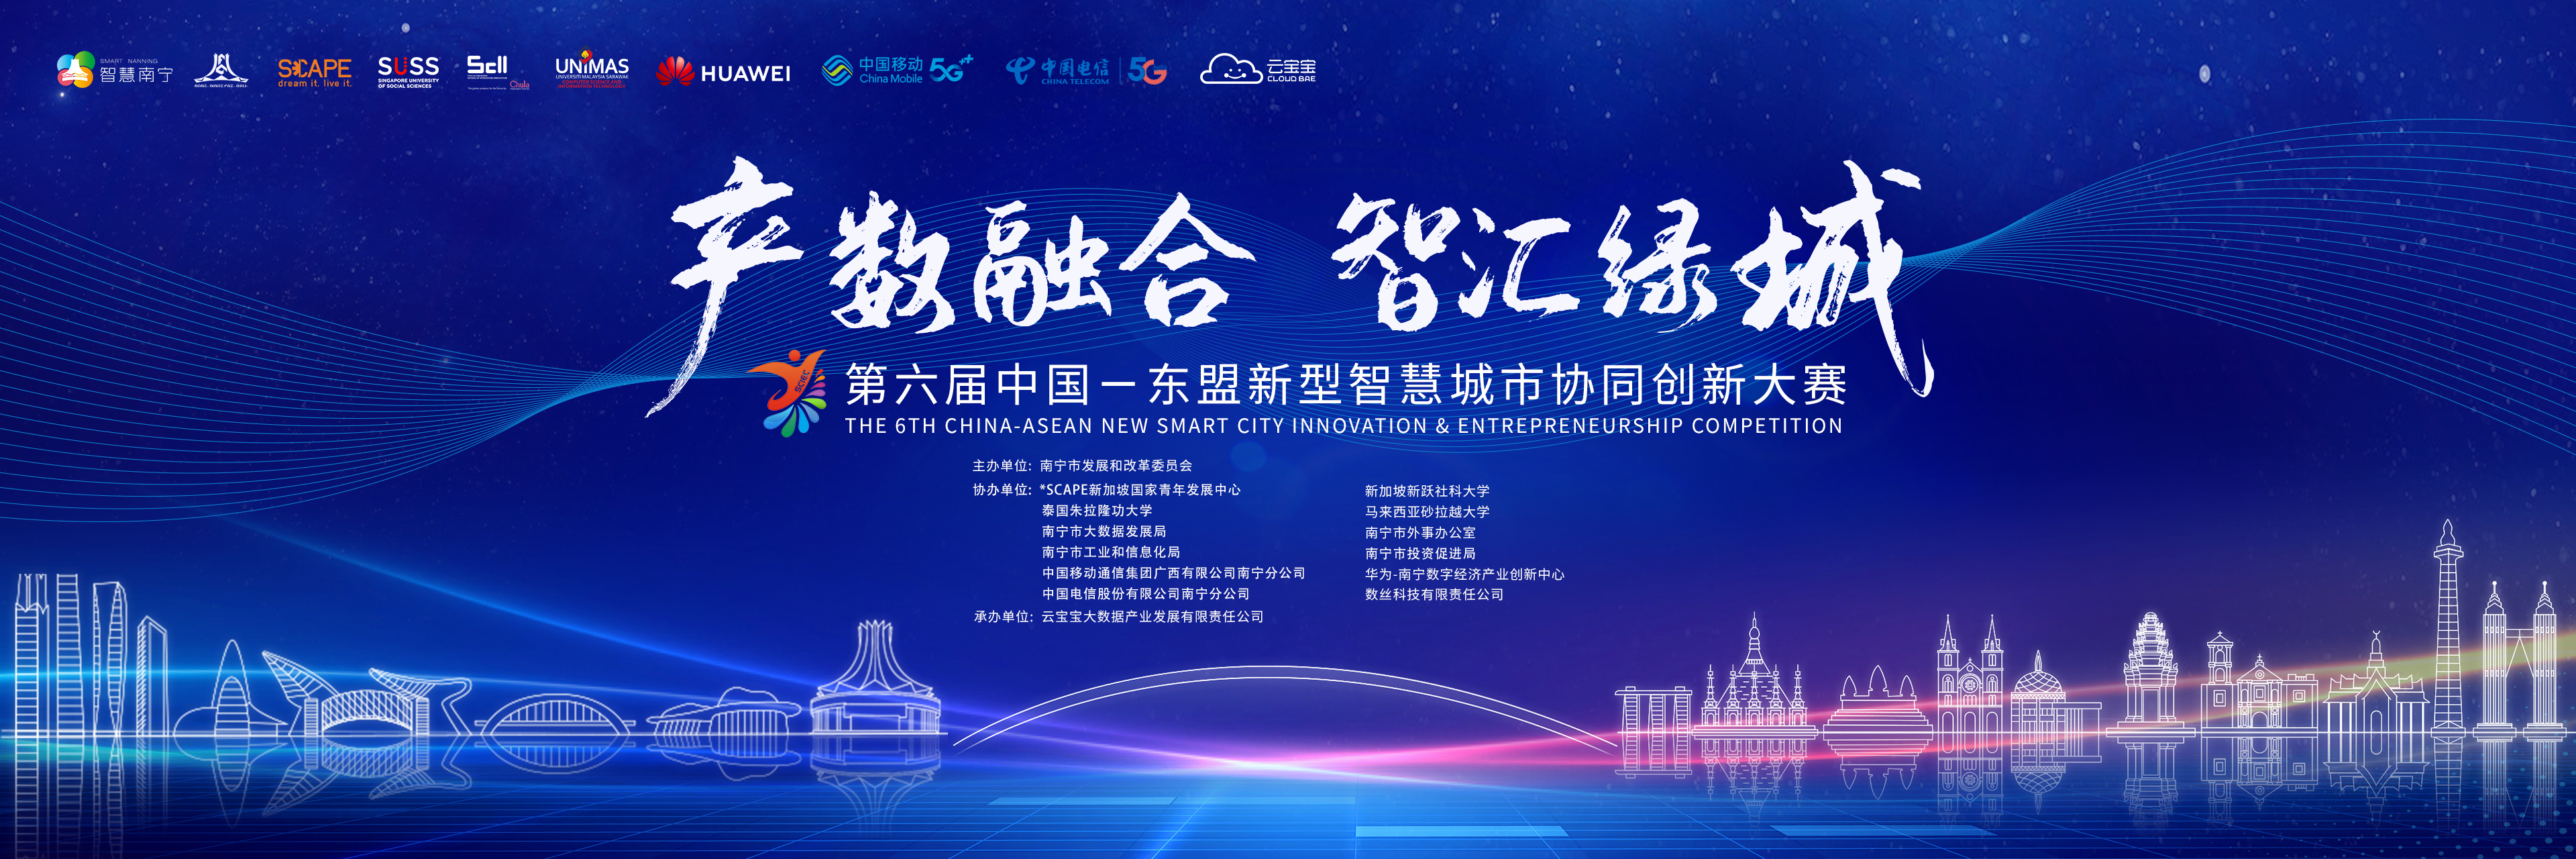 关于第六届中国—东盟新型智慧城市协同创新大赛 南宁主赛、东盟分赛入围决赛项目的公示